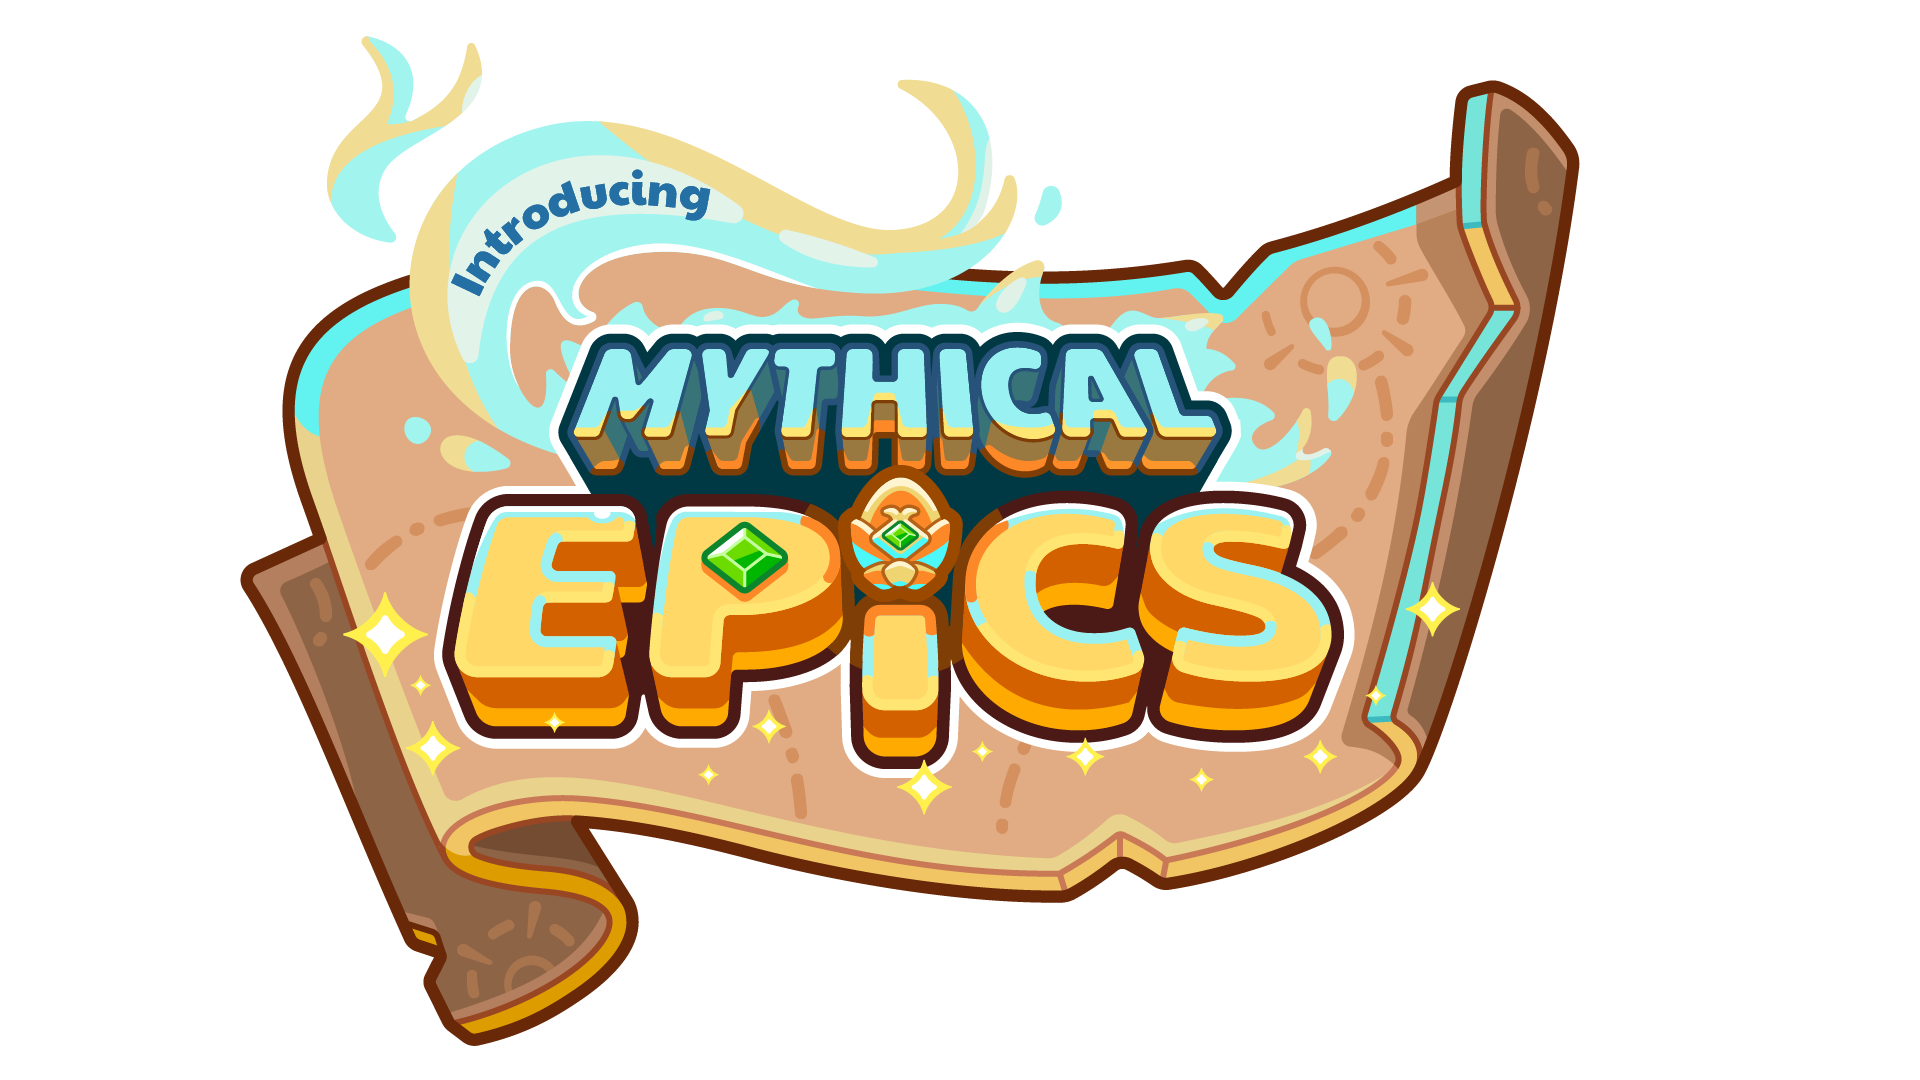 Mythical_Epics_Logo_1920x1080_Introducción.png